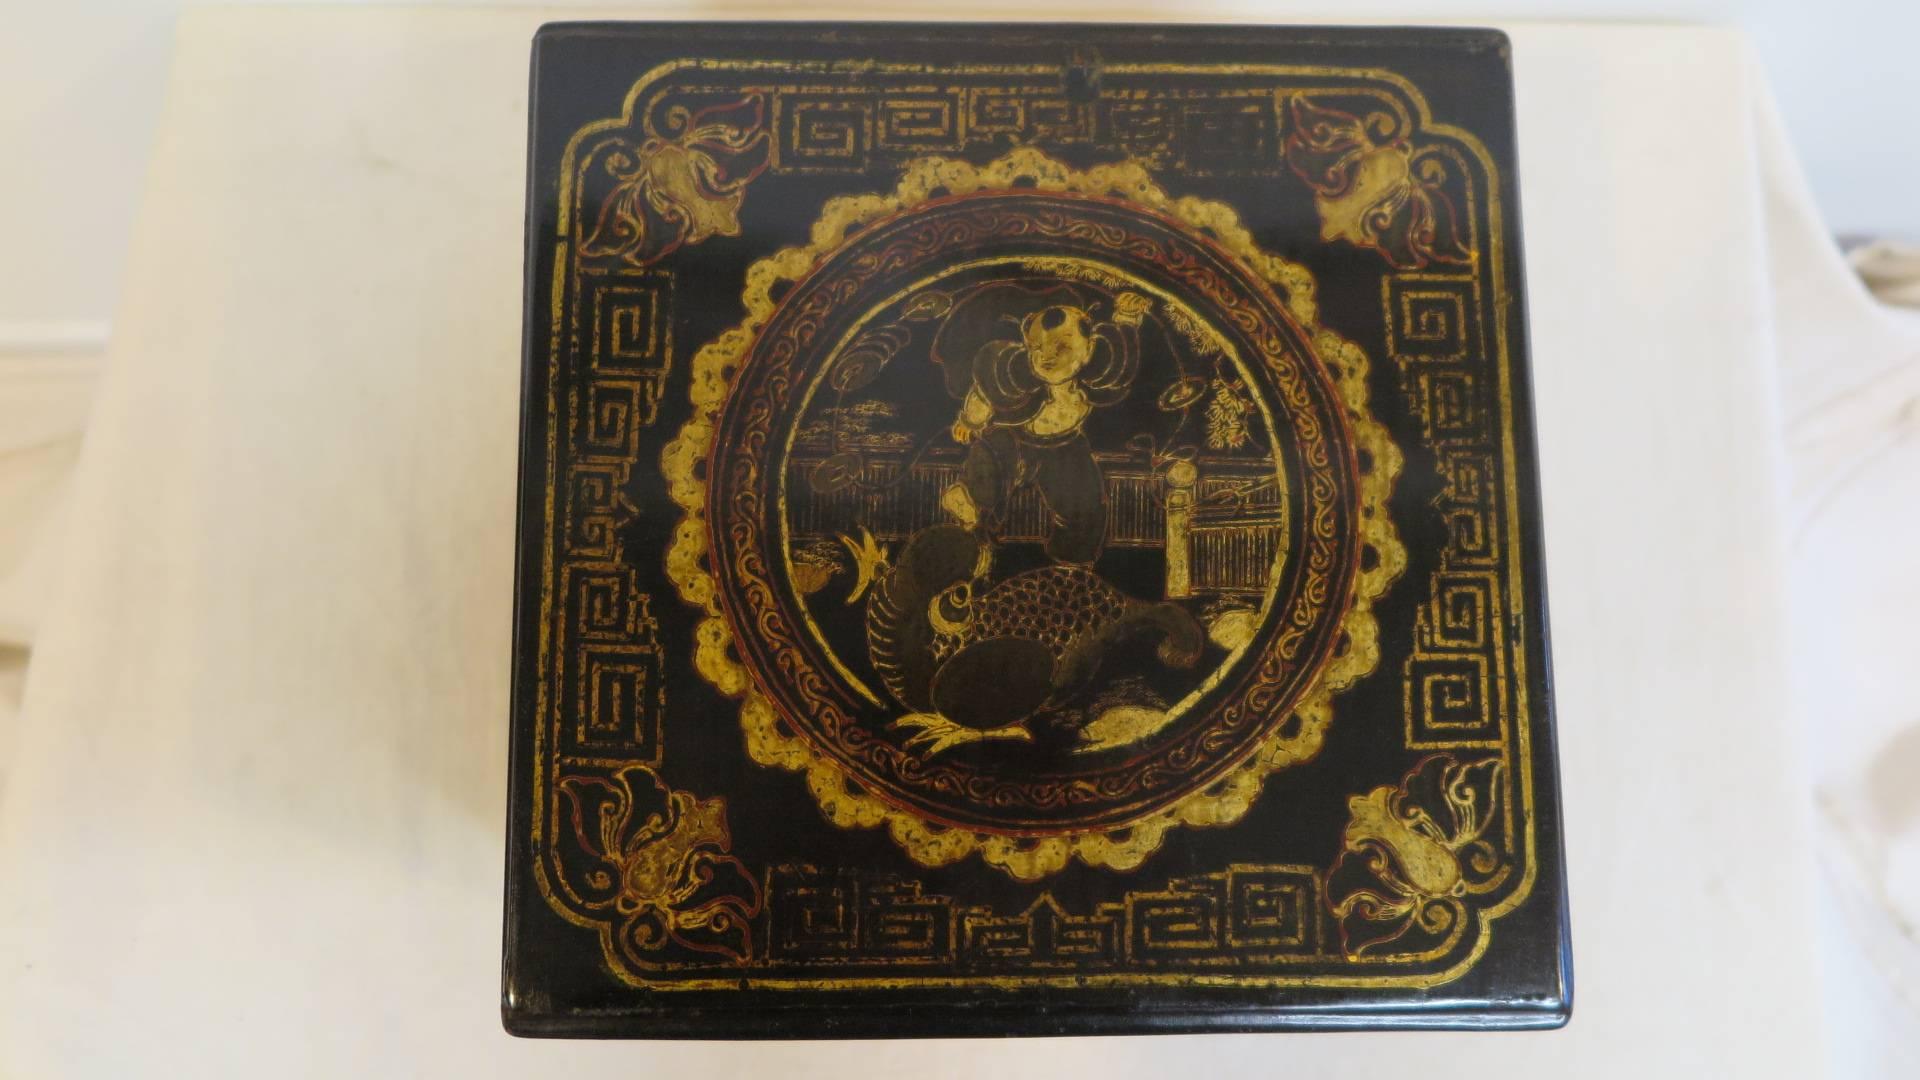 Chinesische Chinoiserie-Dose aus dem 19. Jahrhundert, vergoldet und bemalt. Lacquer Arbeit Box von sehr hoher Qualität.
Wunderschön gemalt.
 